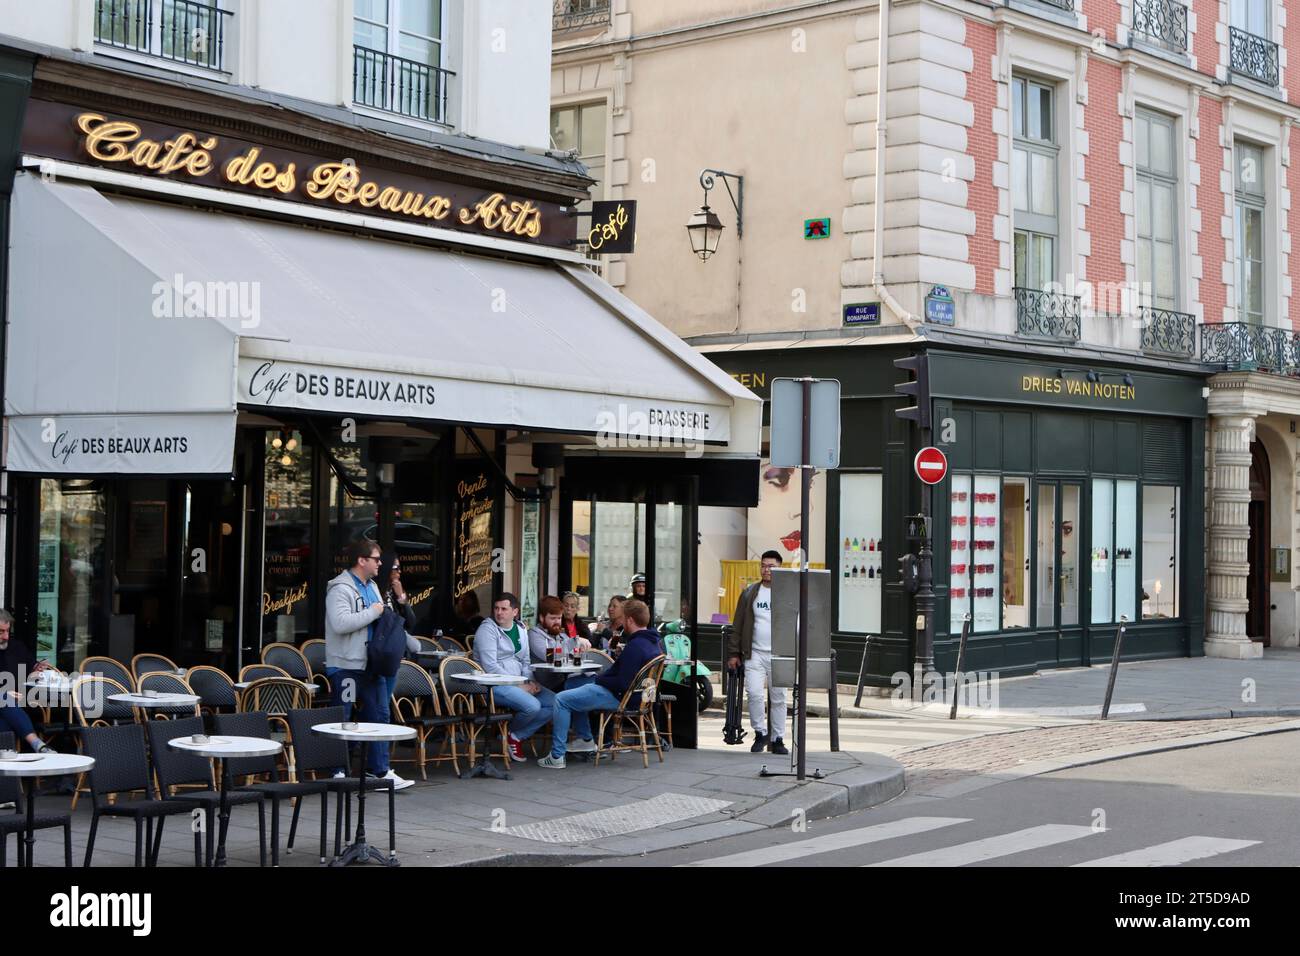 Cafe des Beaux Arts on the corner of Quai Malaquais and Rue Bonaparte in Saint-Germain-des-Pres, Paris, France Stock Photo